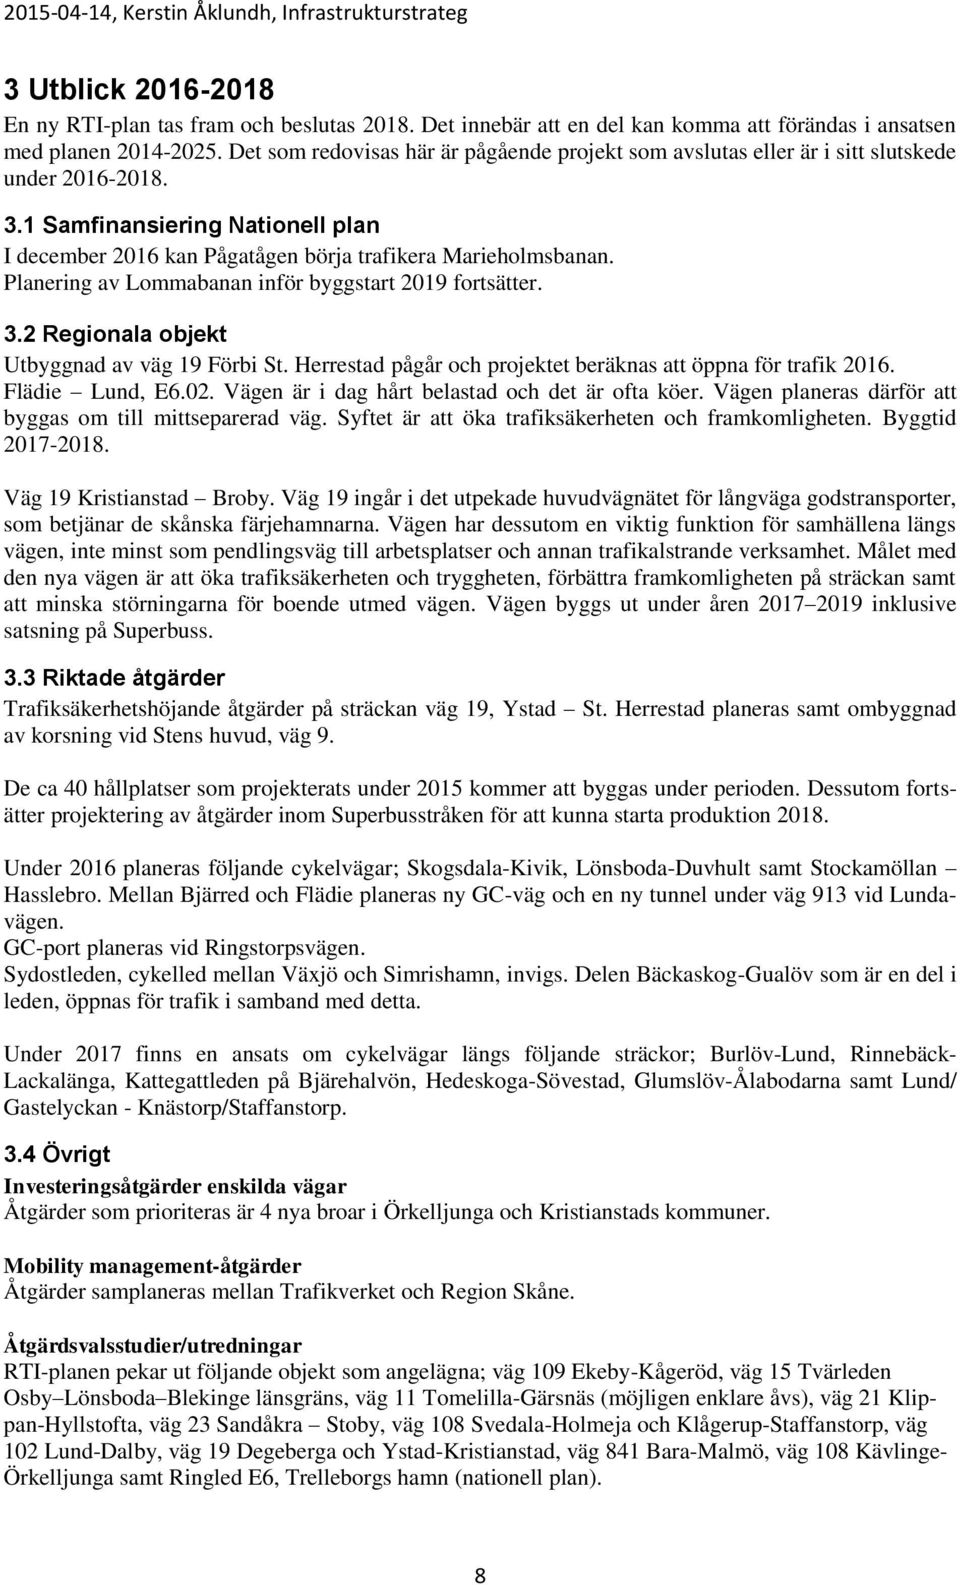 Planering av Lommabanan inför byggstart 2019 fortsätter. 3.2 Regionala objekt Utbyggnad av väg 19 Förbi St. Herrestad pågår och projektet beräknas att öppna för trafik 2016. Flädie Lund, E6.02.